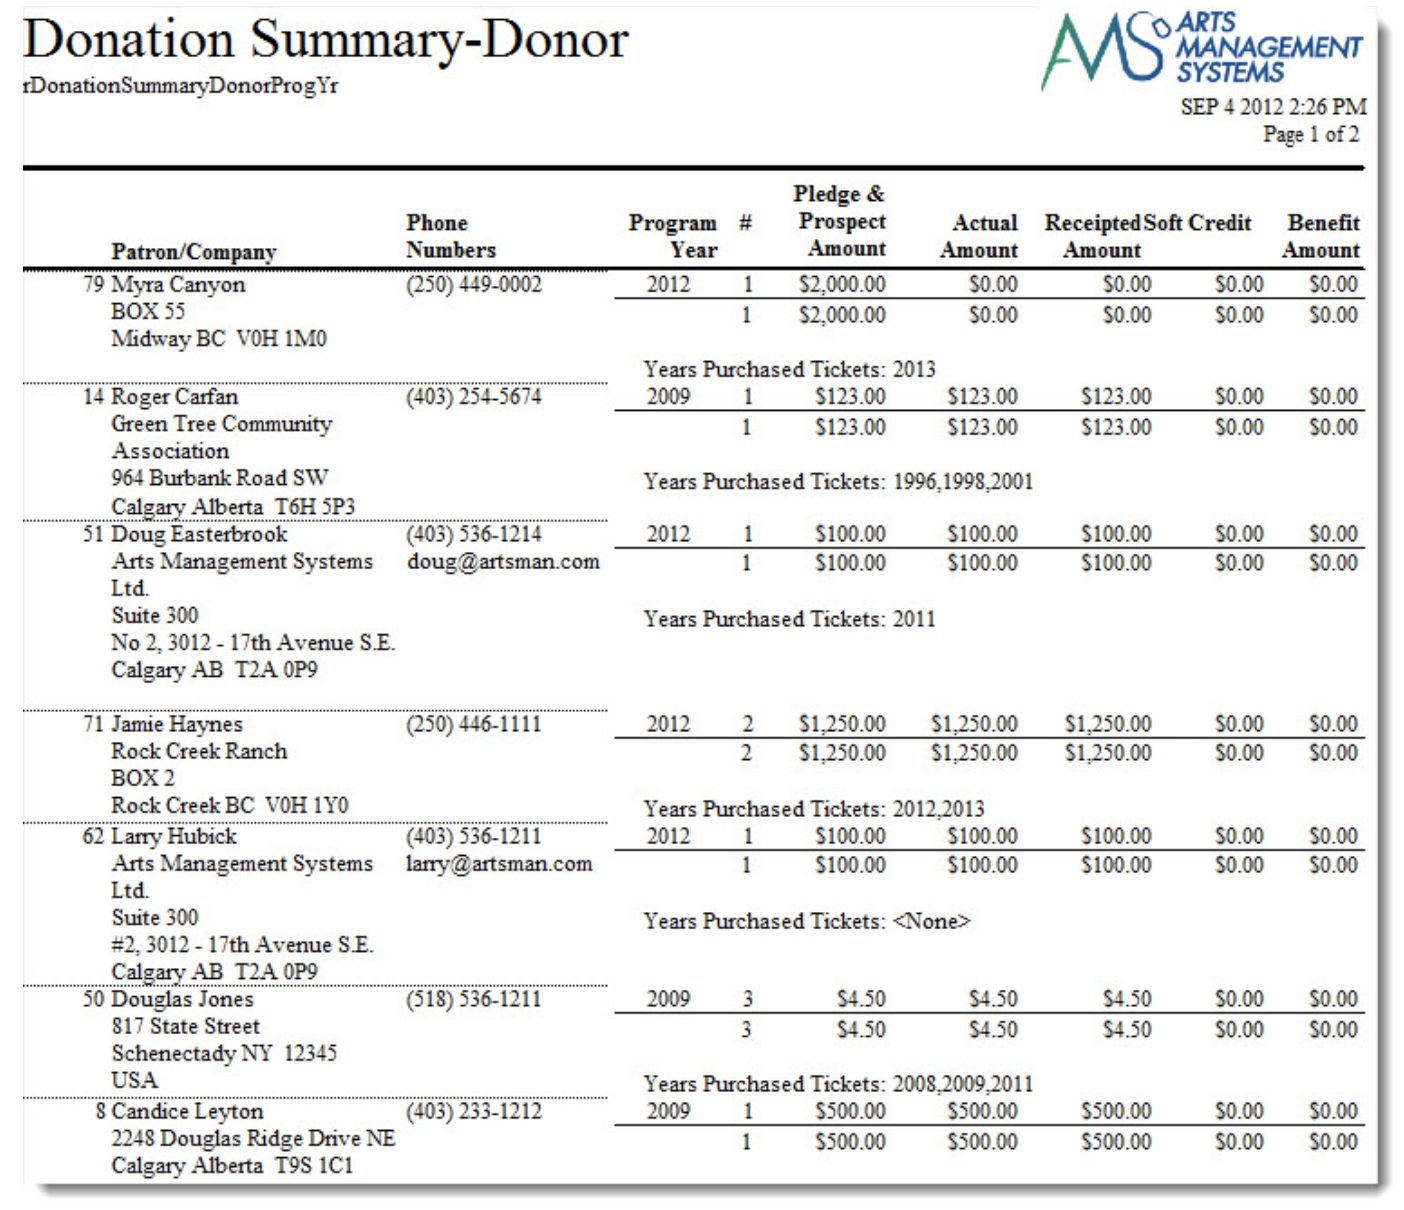 Donor Summary - Donor (Program)